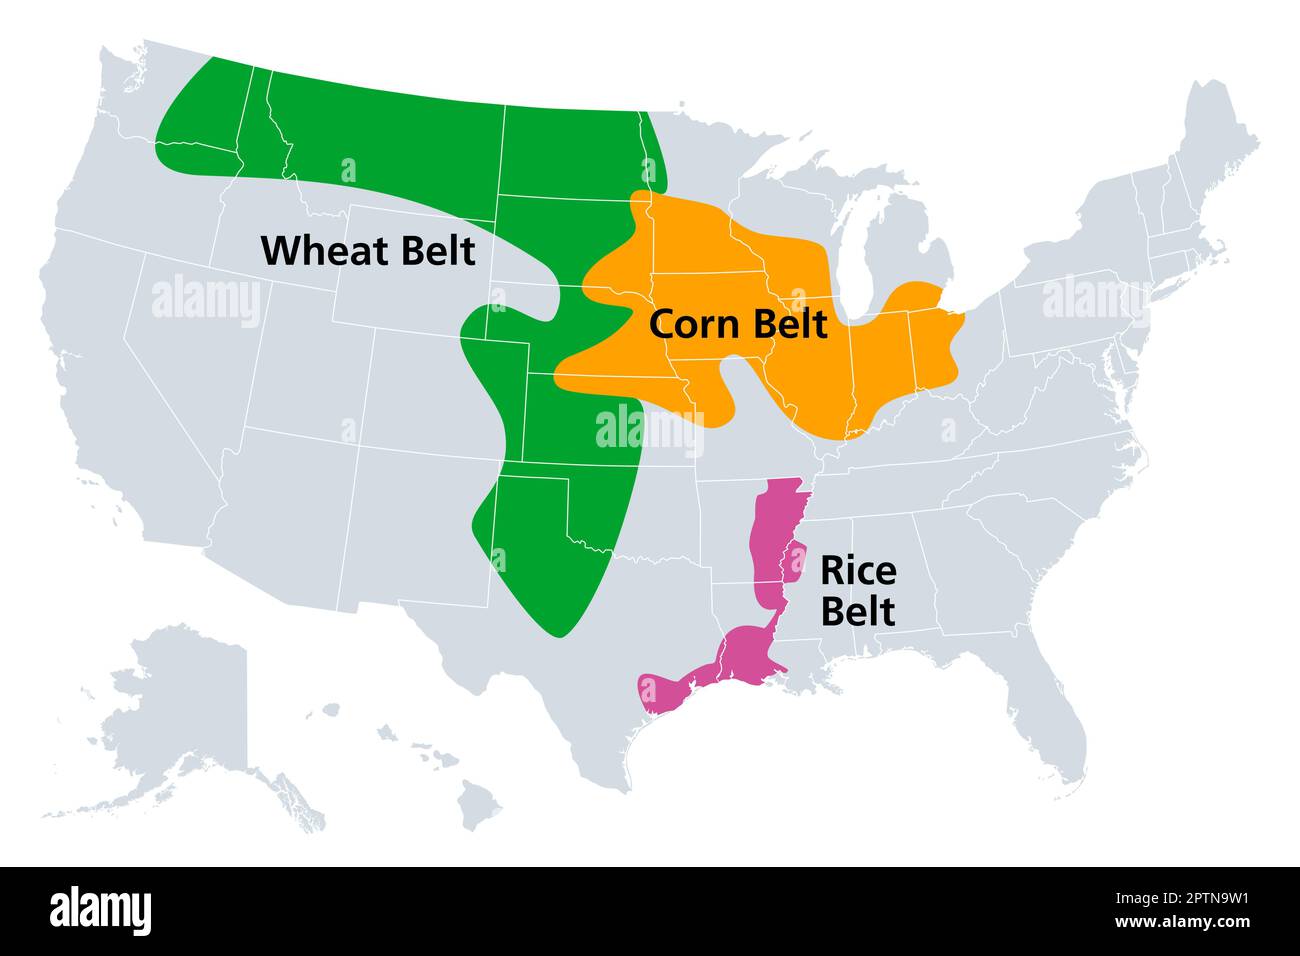 Ceinture de maïs, ceinture de blé et ceinture de riz des États-Unis, carte politique Illustration de Vecteur